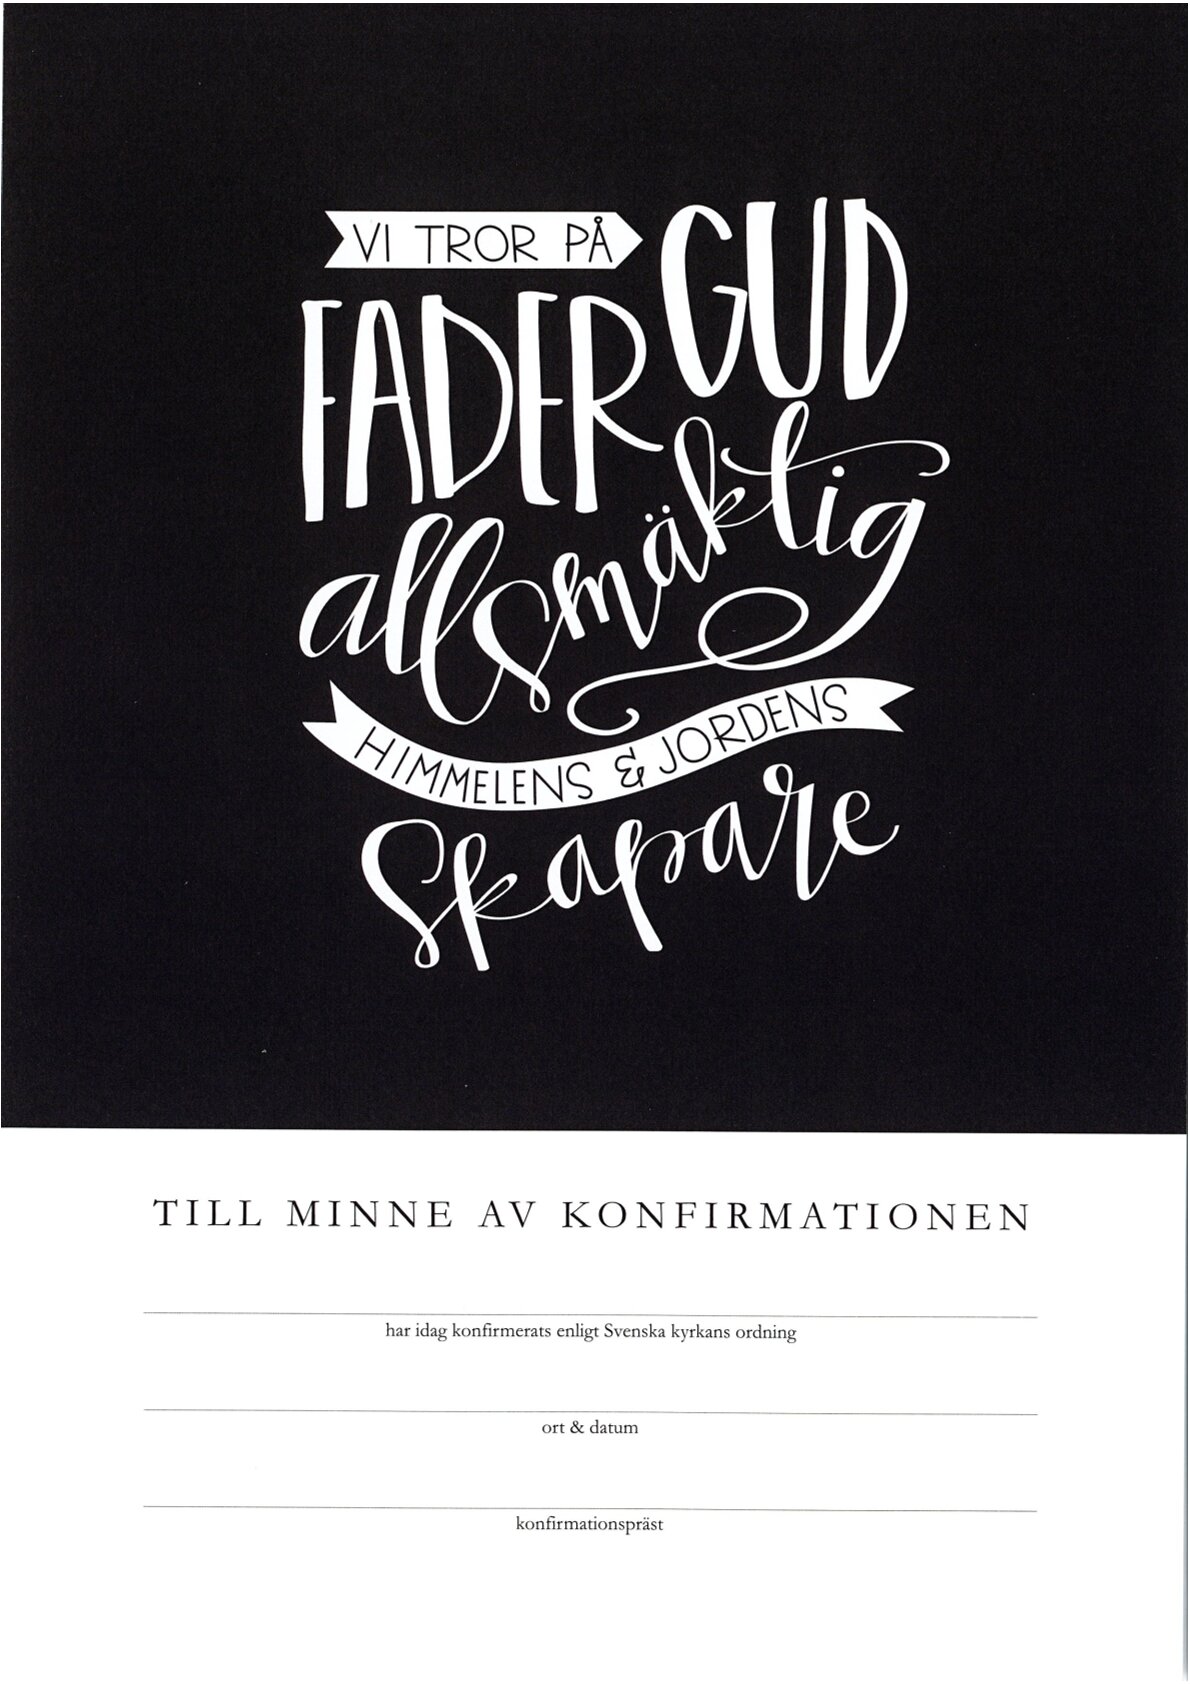 Konfirmationsminne - Vi tror på Fader Gud - Svenska kyrkan